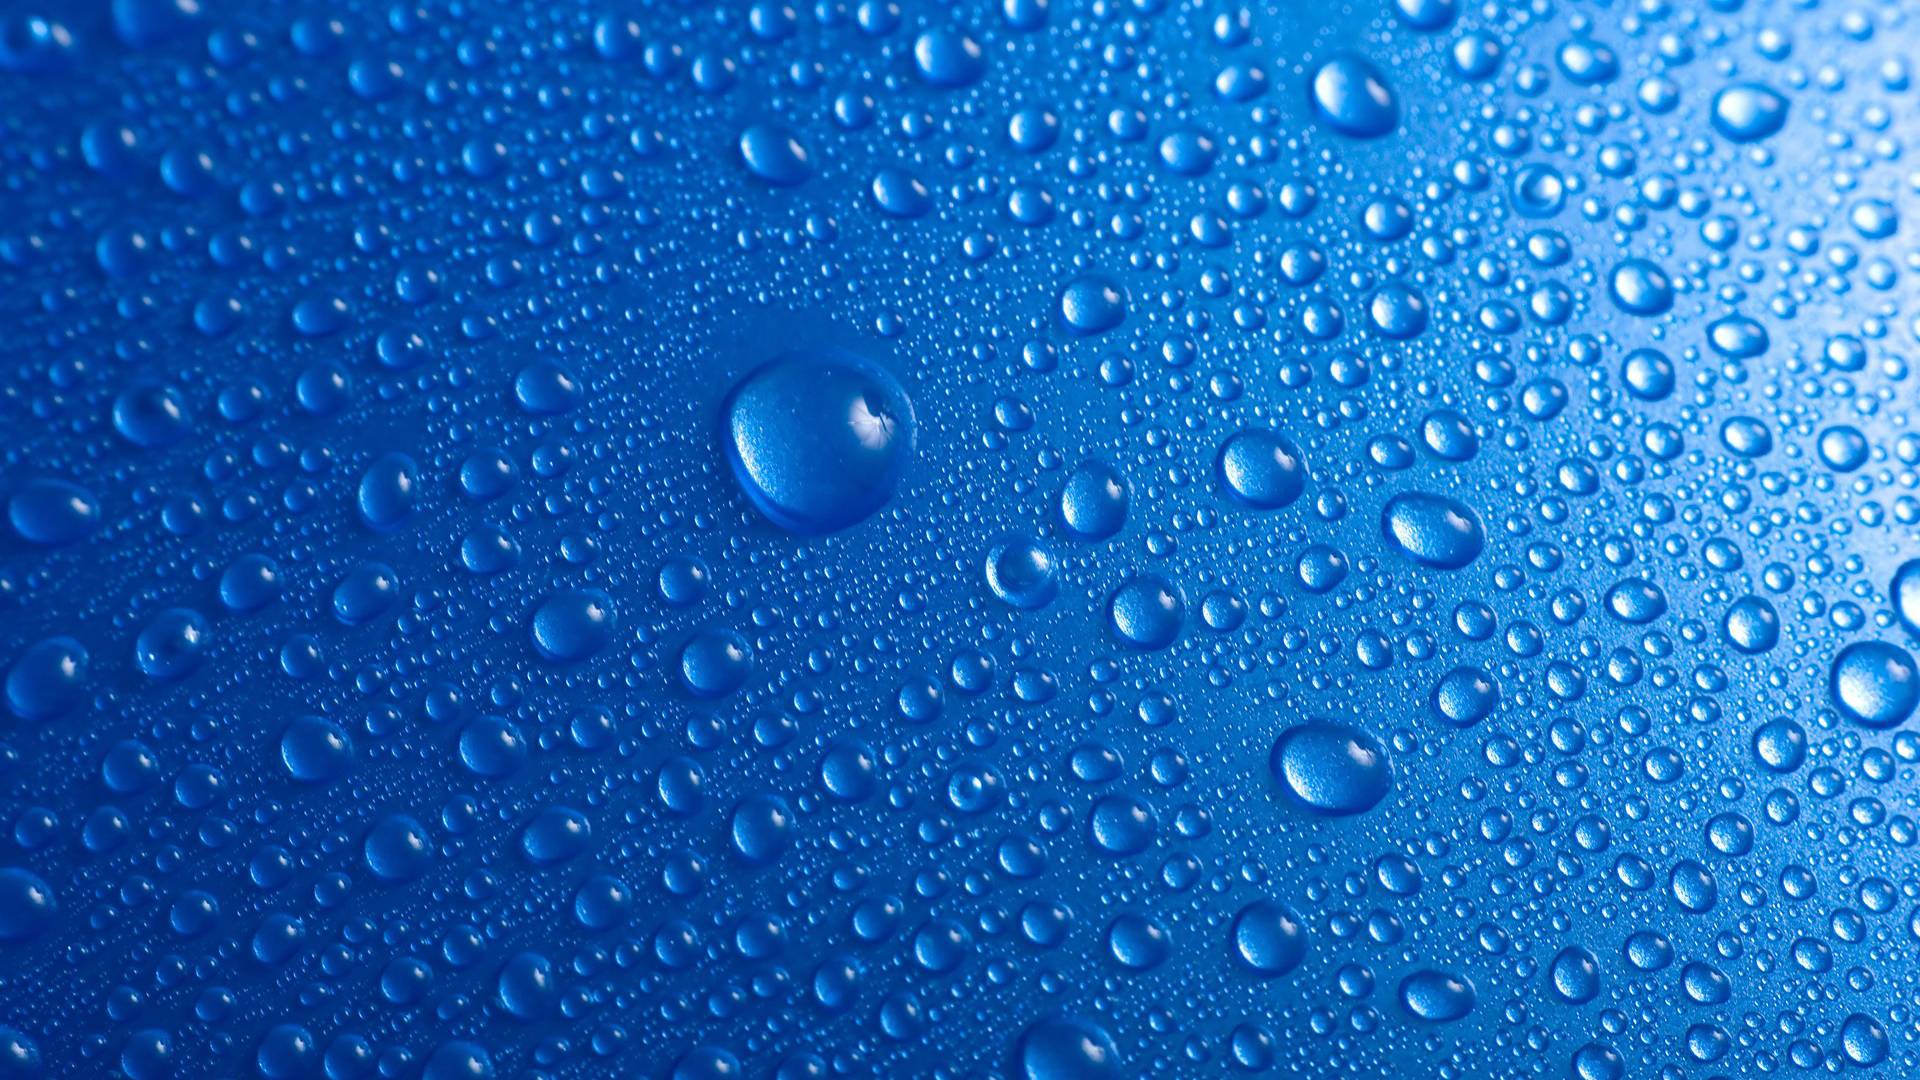 Blue Water Abstract HD Wallpaper. Hdwidescreens